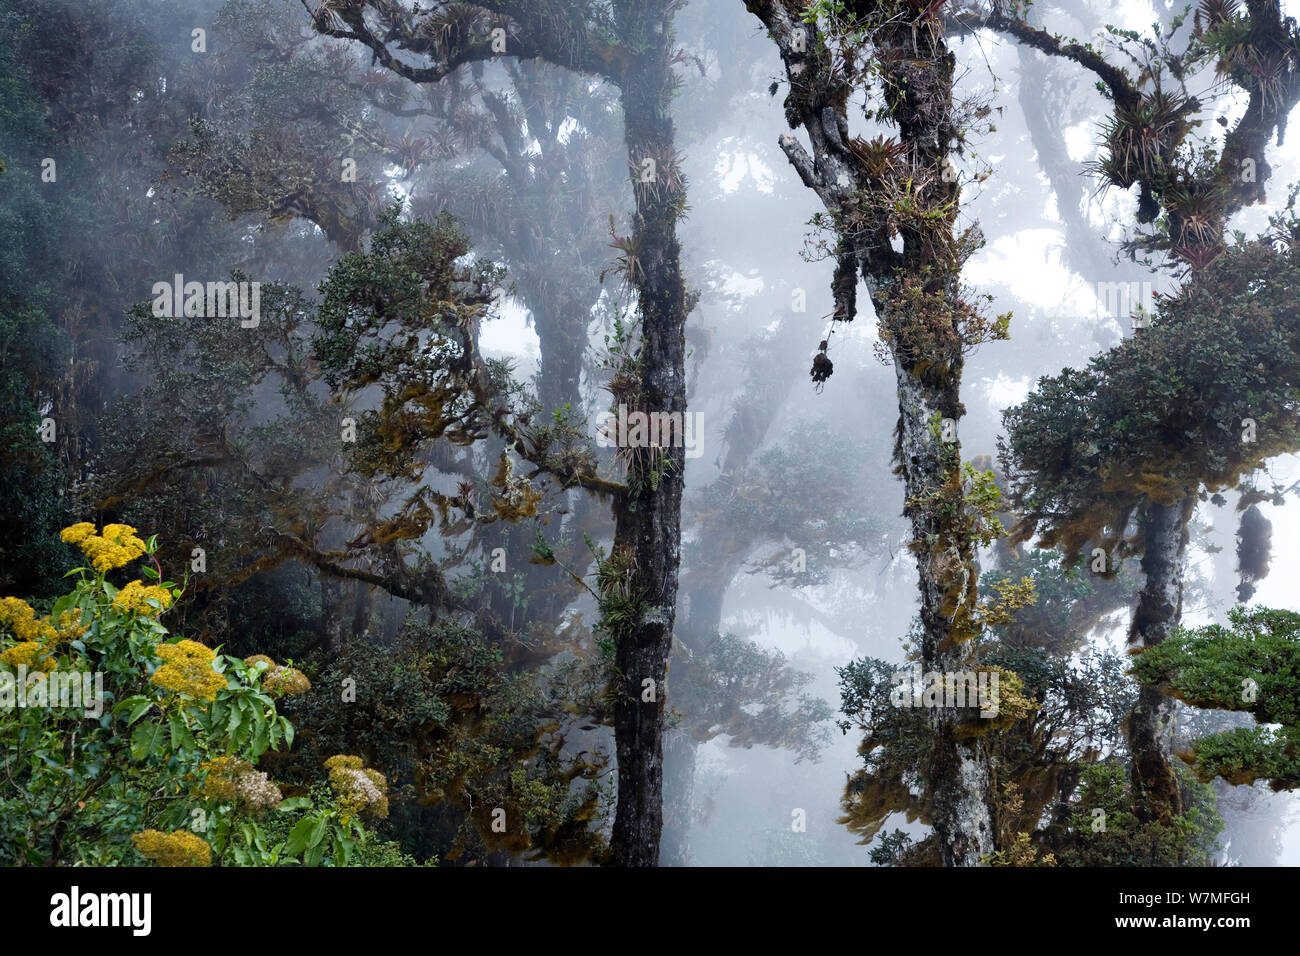 Rainforest at Cerro de la Muerte, Costa Rica Stock Photo